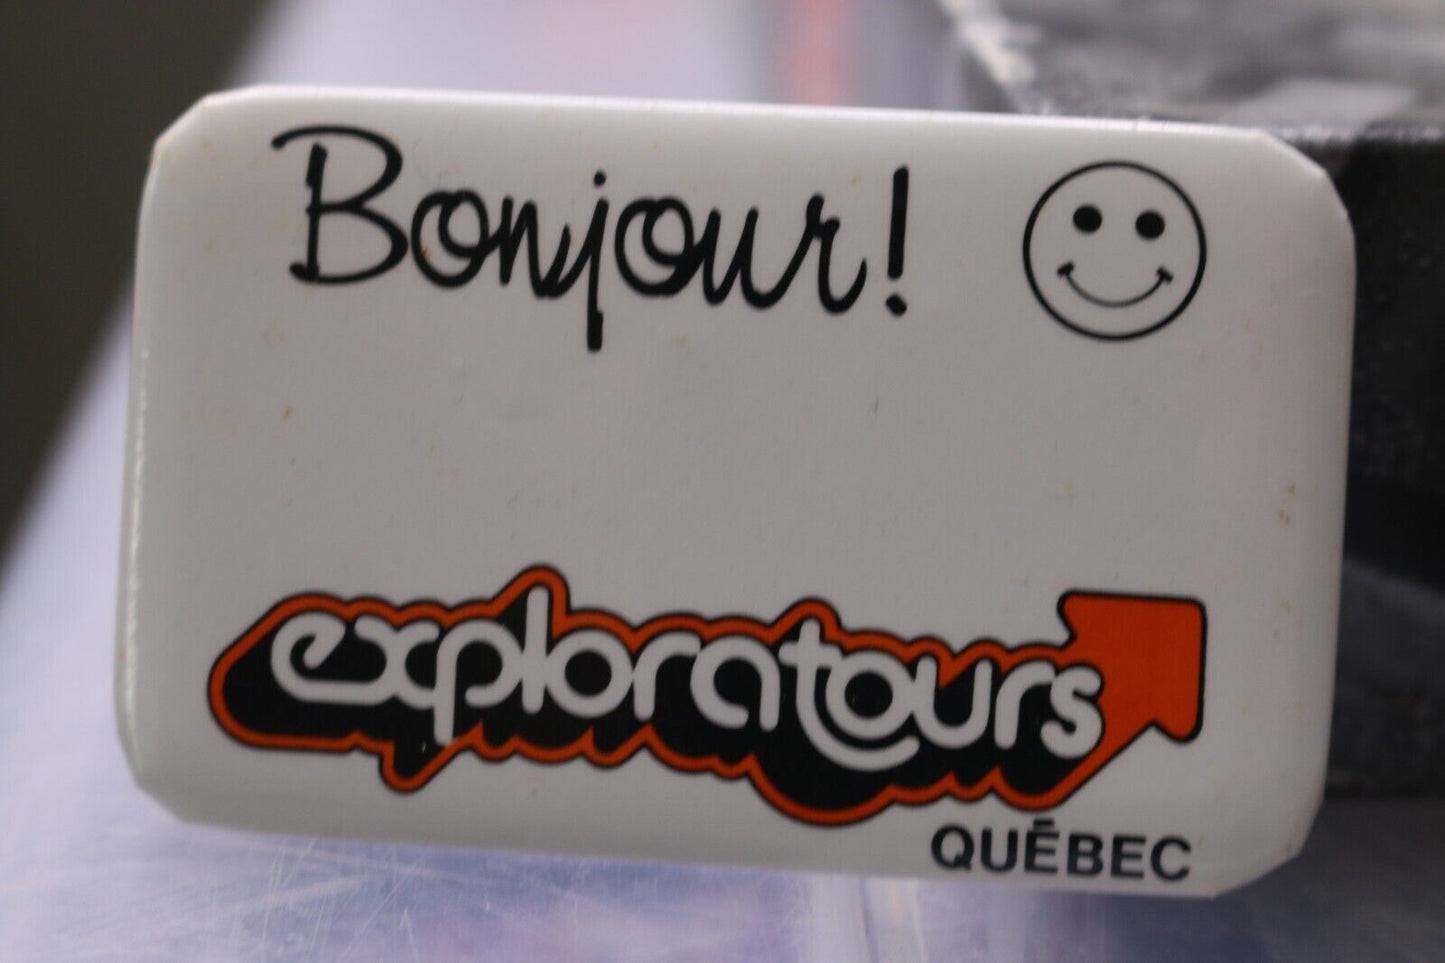 Vintage Macaron Pinback Québec Bonjour! Exploratours Smiley Souriant